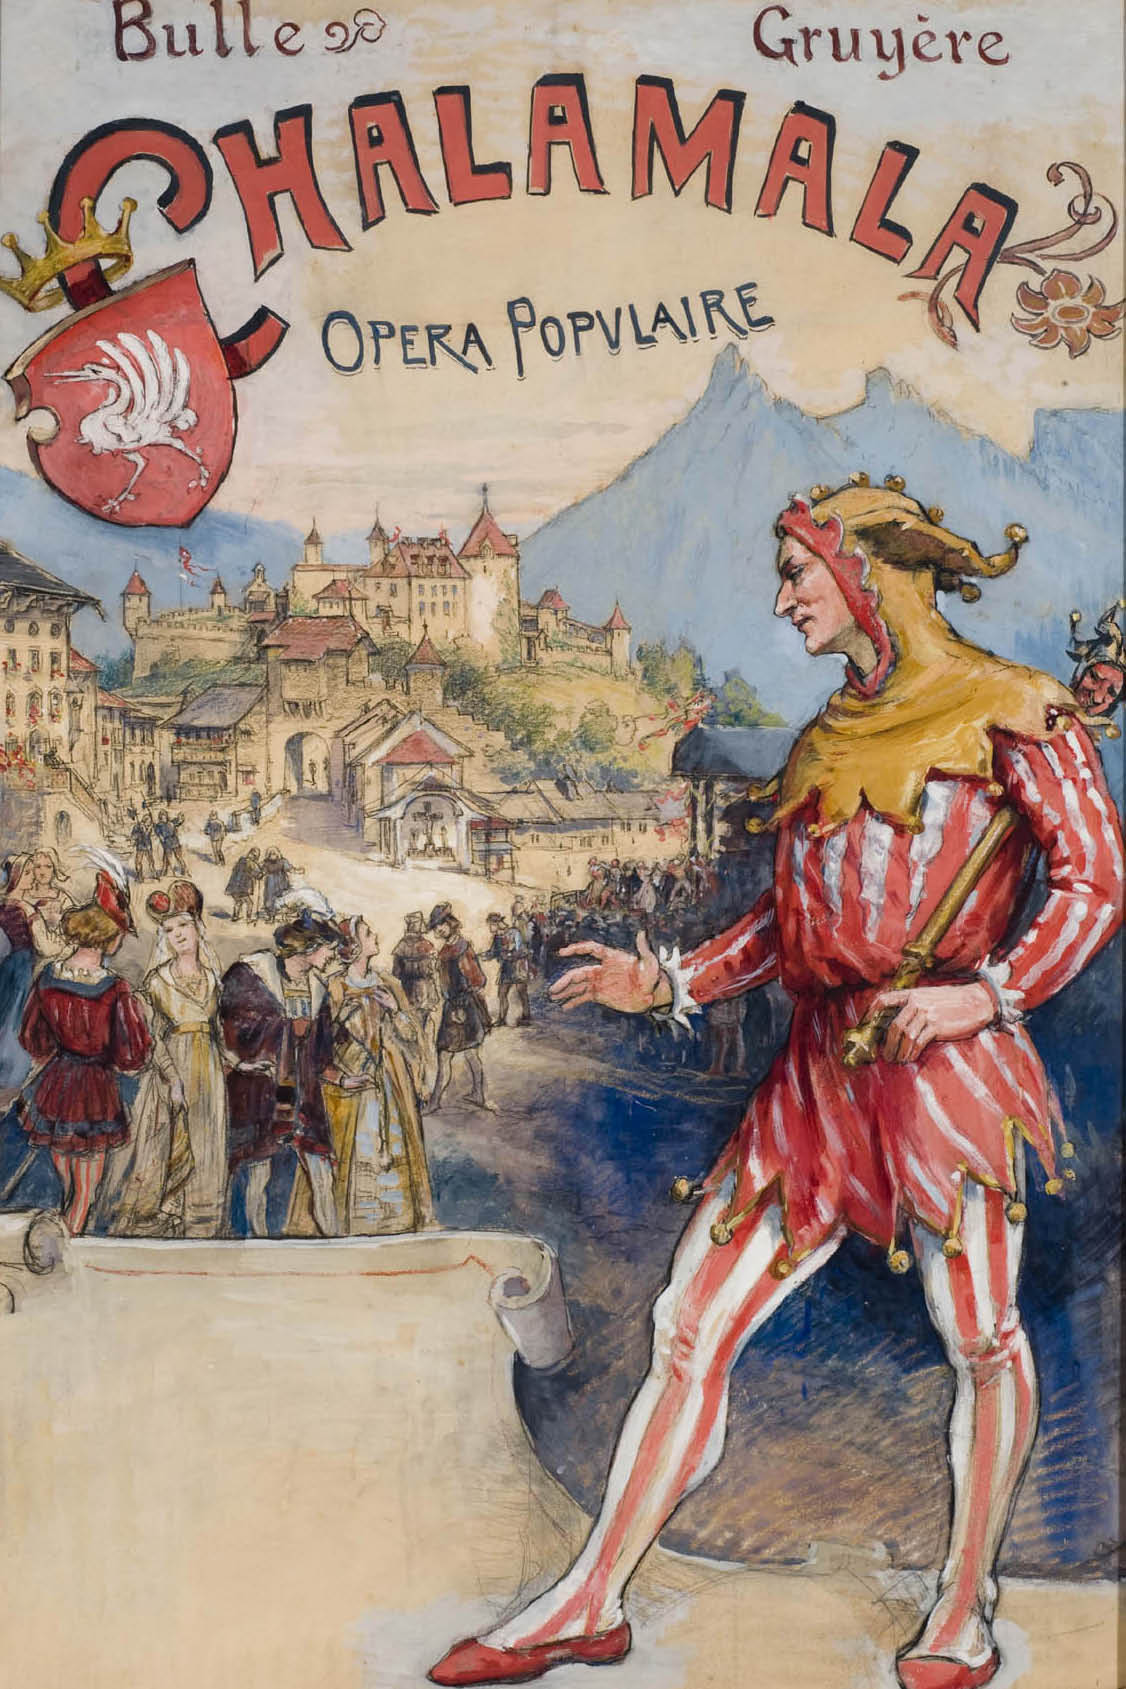 «Chalamala Opéra populaire» a Gruyères, progetto per il manifesto dello spettacolo a Bulle nel 1910 © Musée gruérien, Bulle